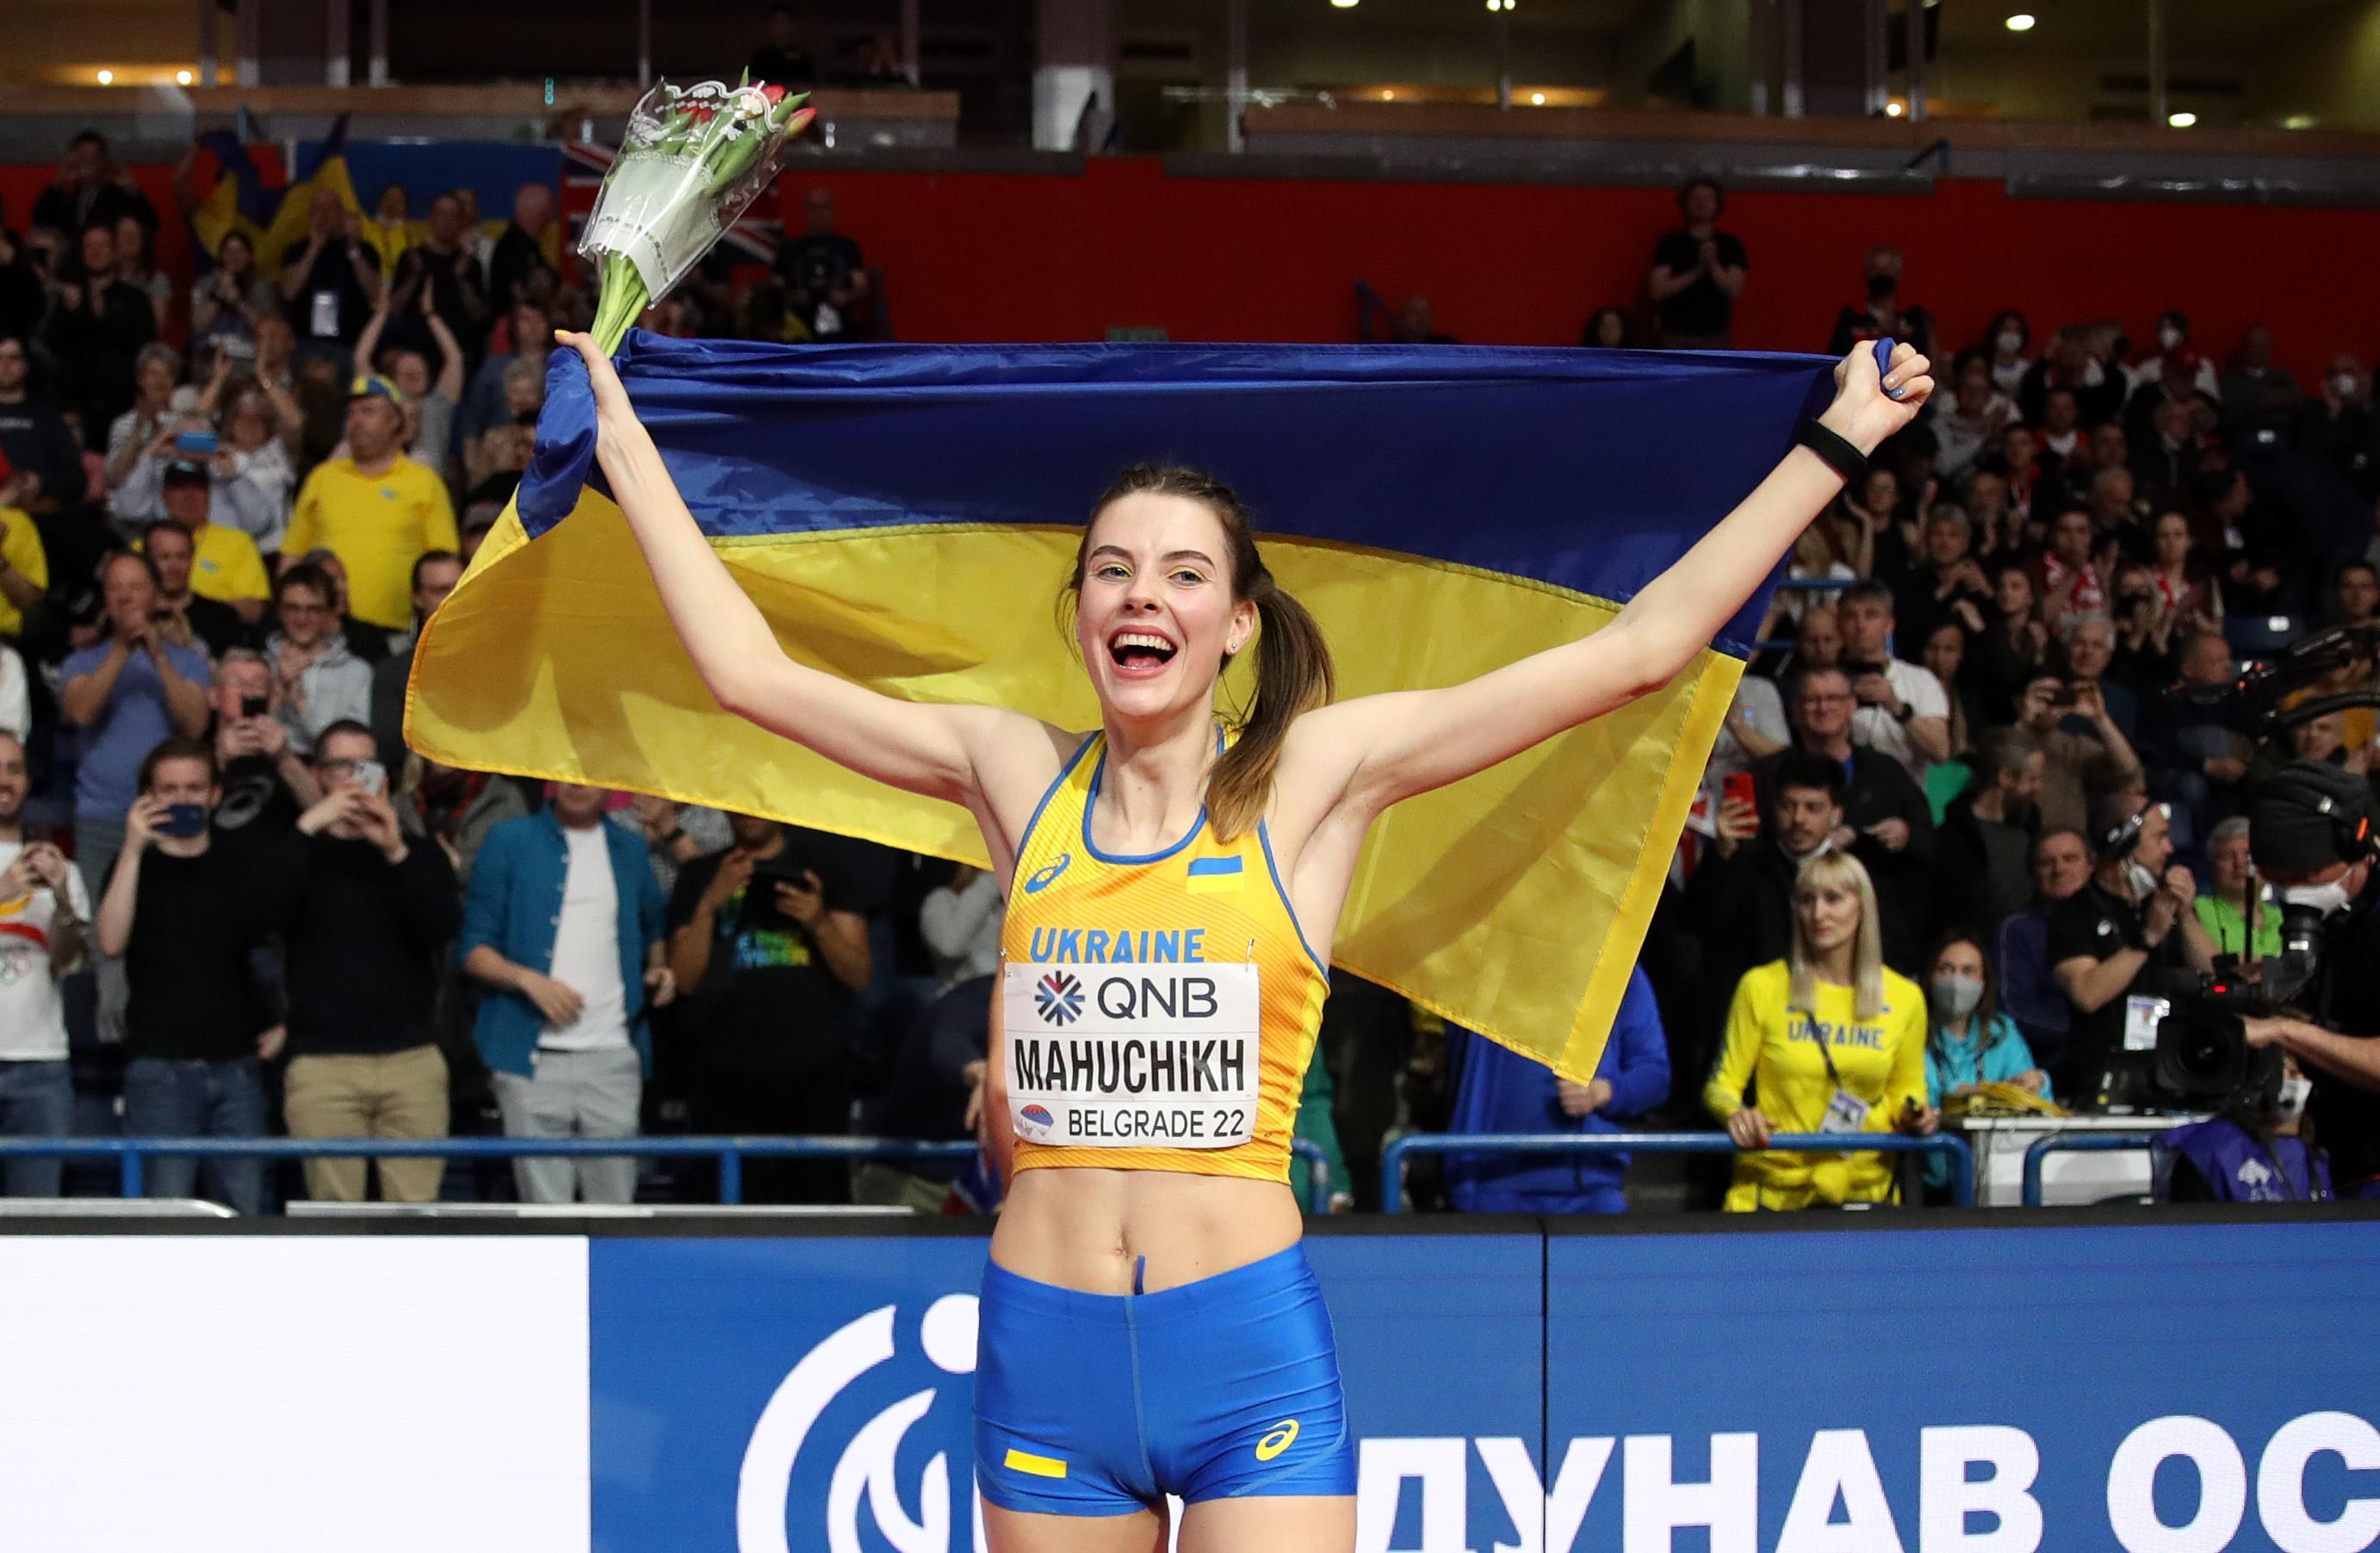 Ярослава Магучіх стала чемпіонкою світу зі стрибків у висоту в приміщенні - 19 марта 2022 - 24 канал Спорт